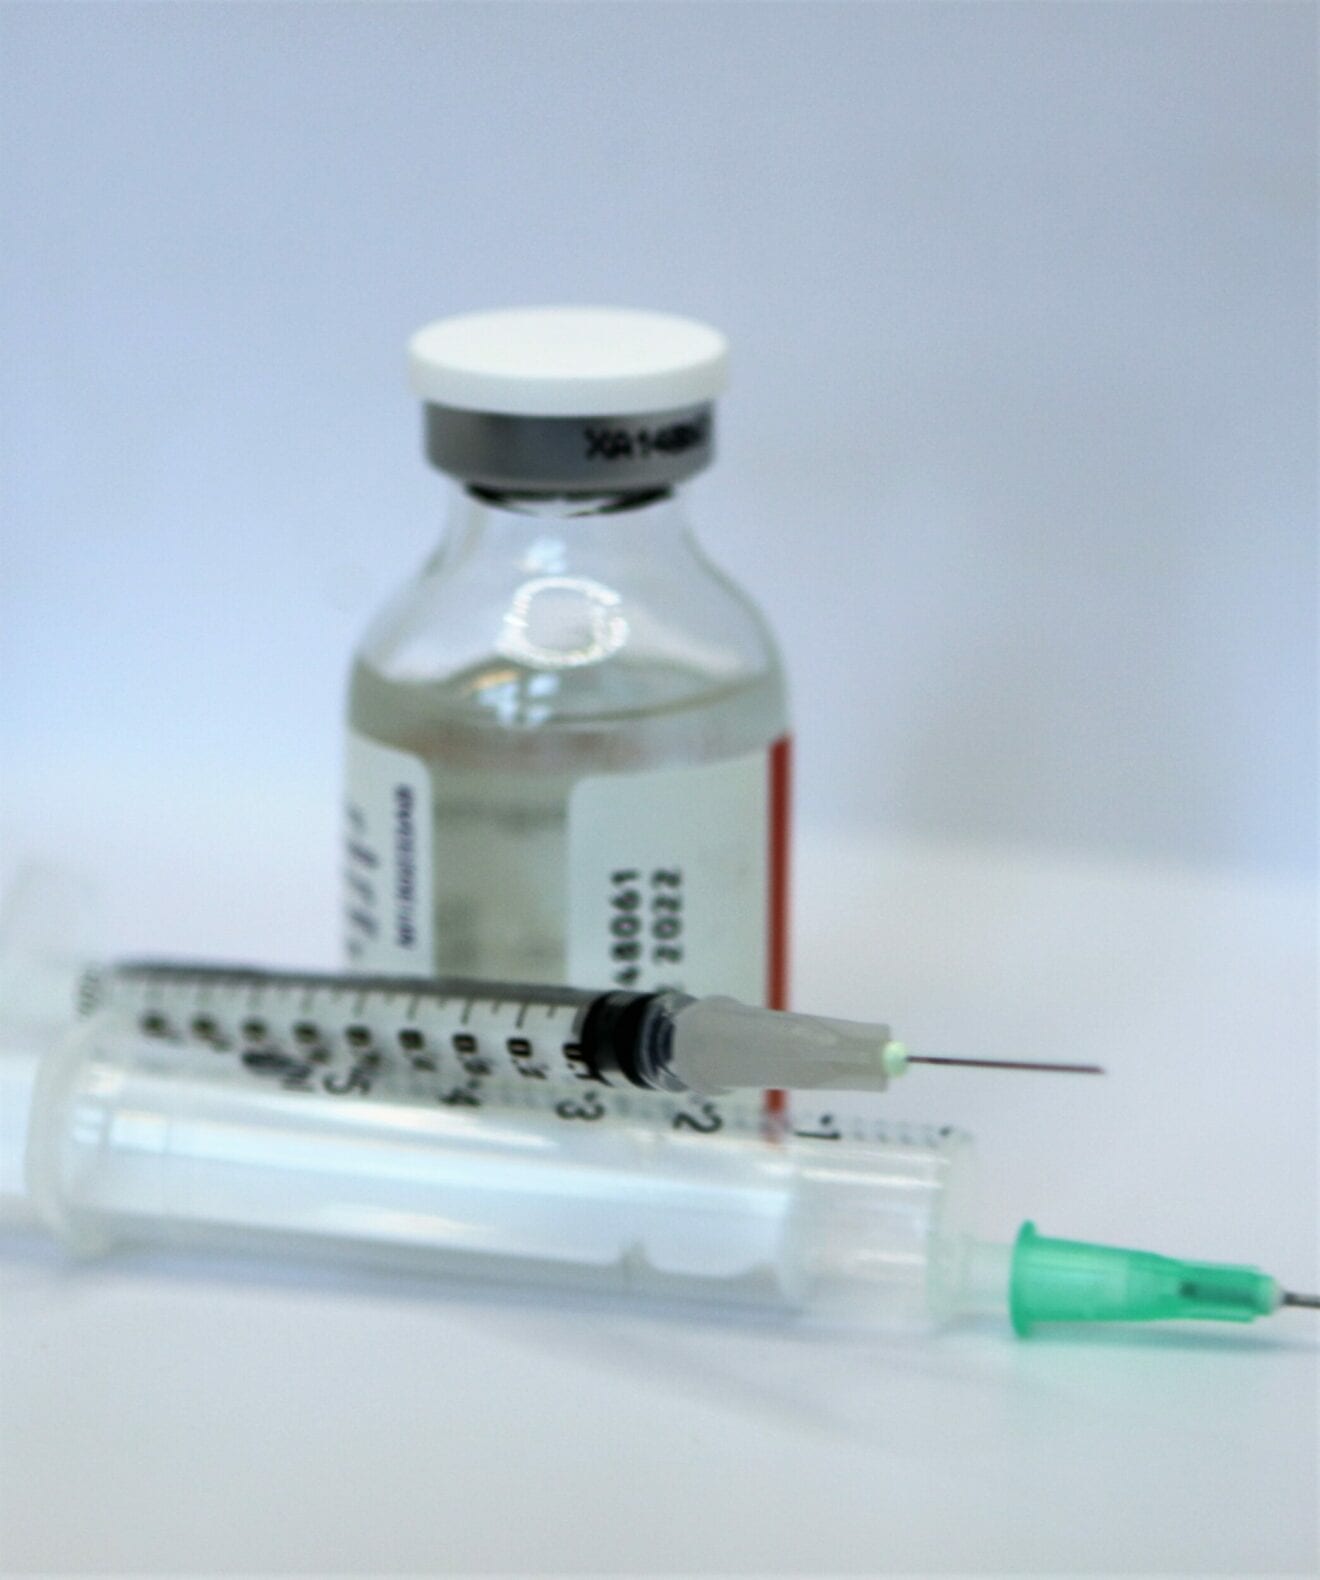 Ikke behov for test ved moderate symptomer de første døgn efter vaccination mod COVID-19